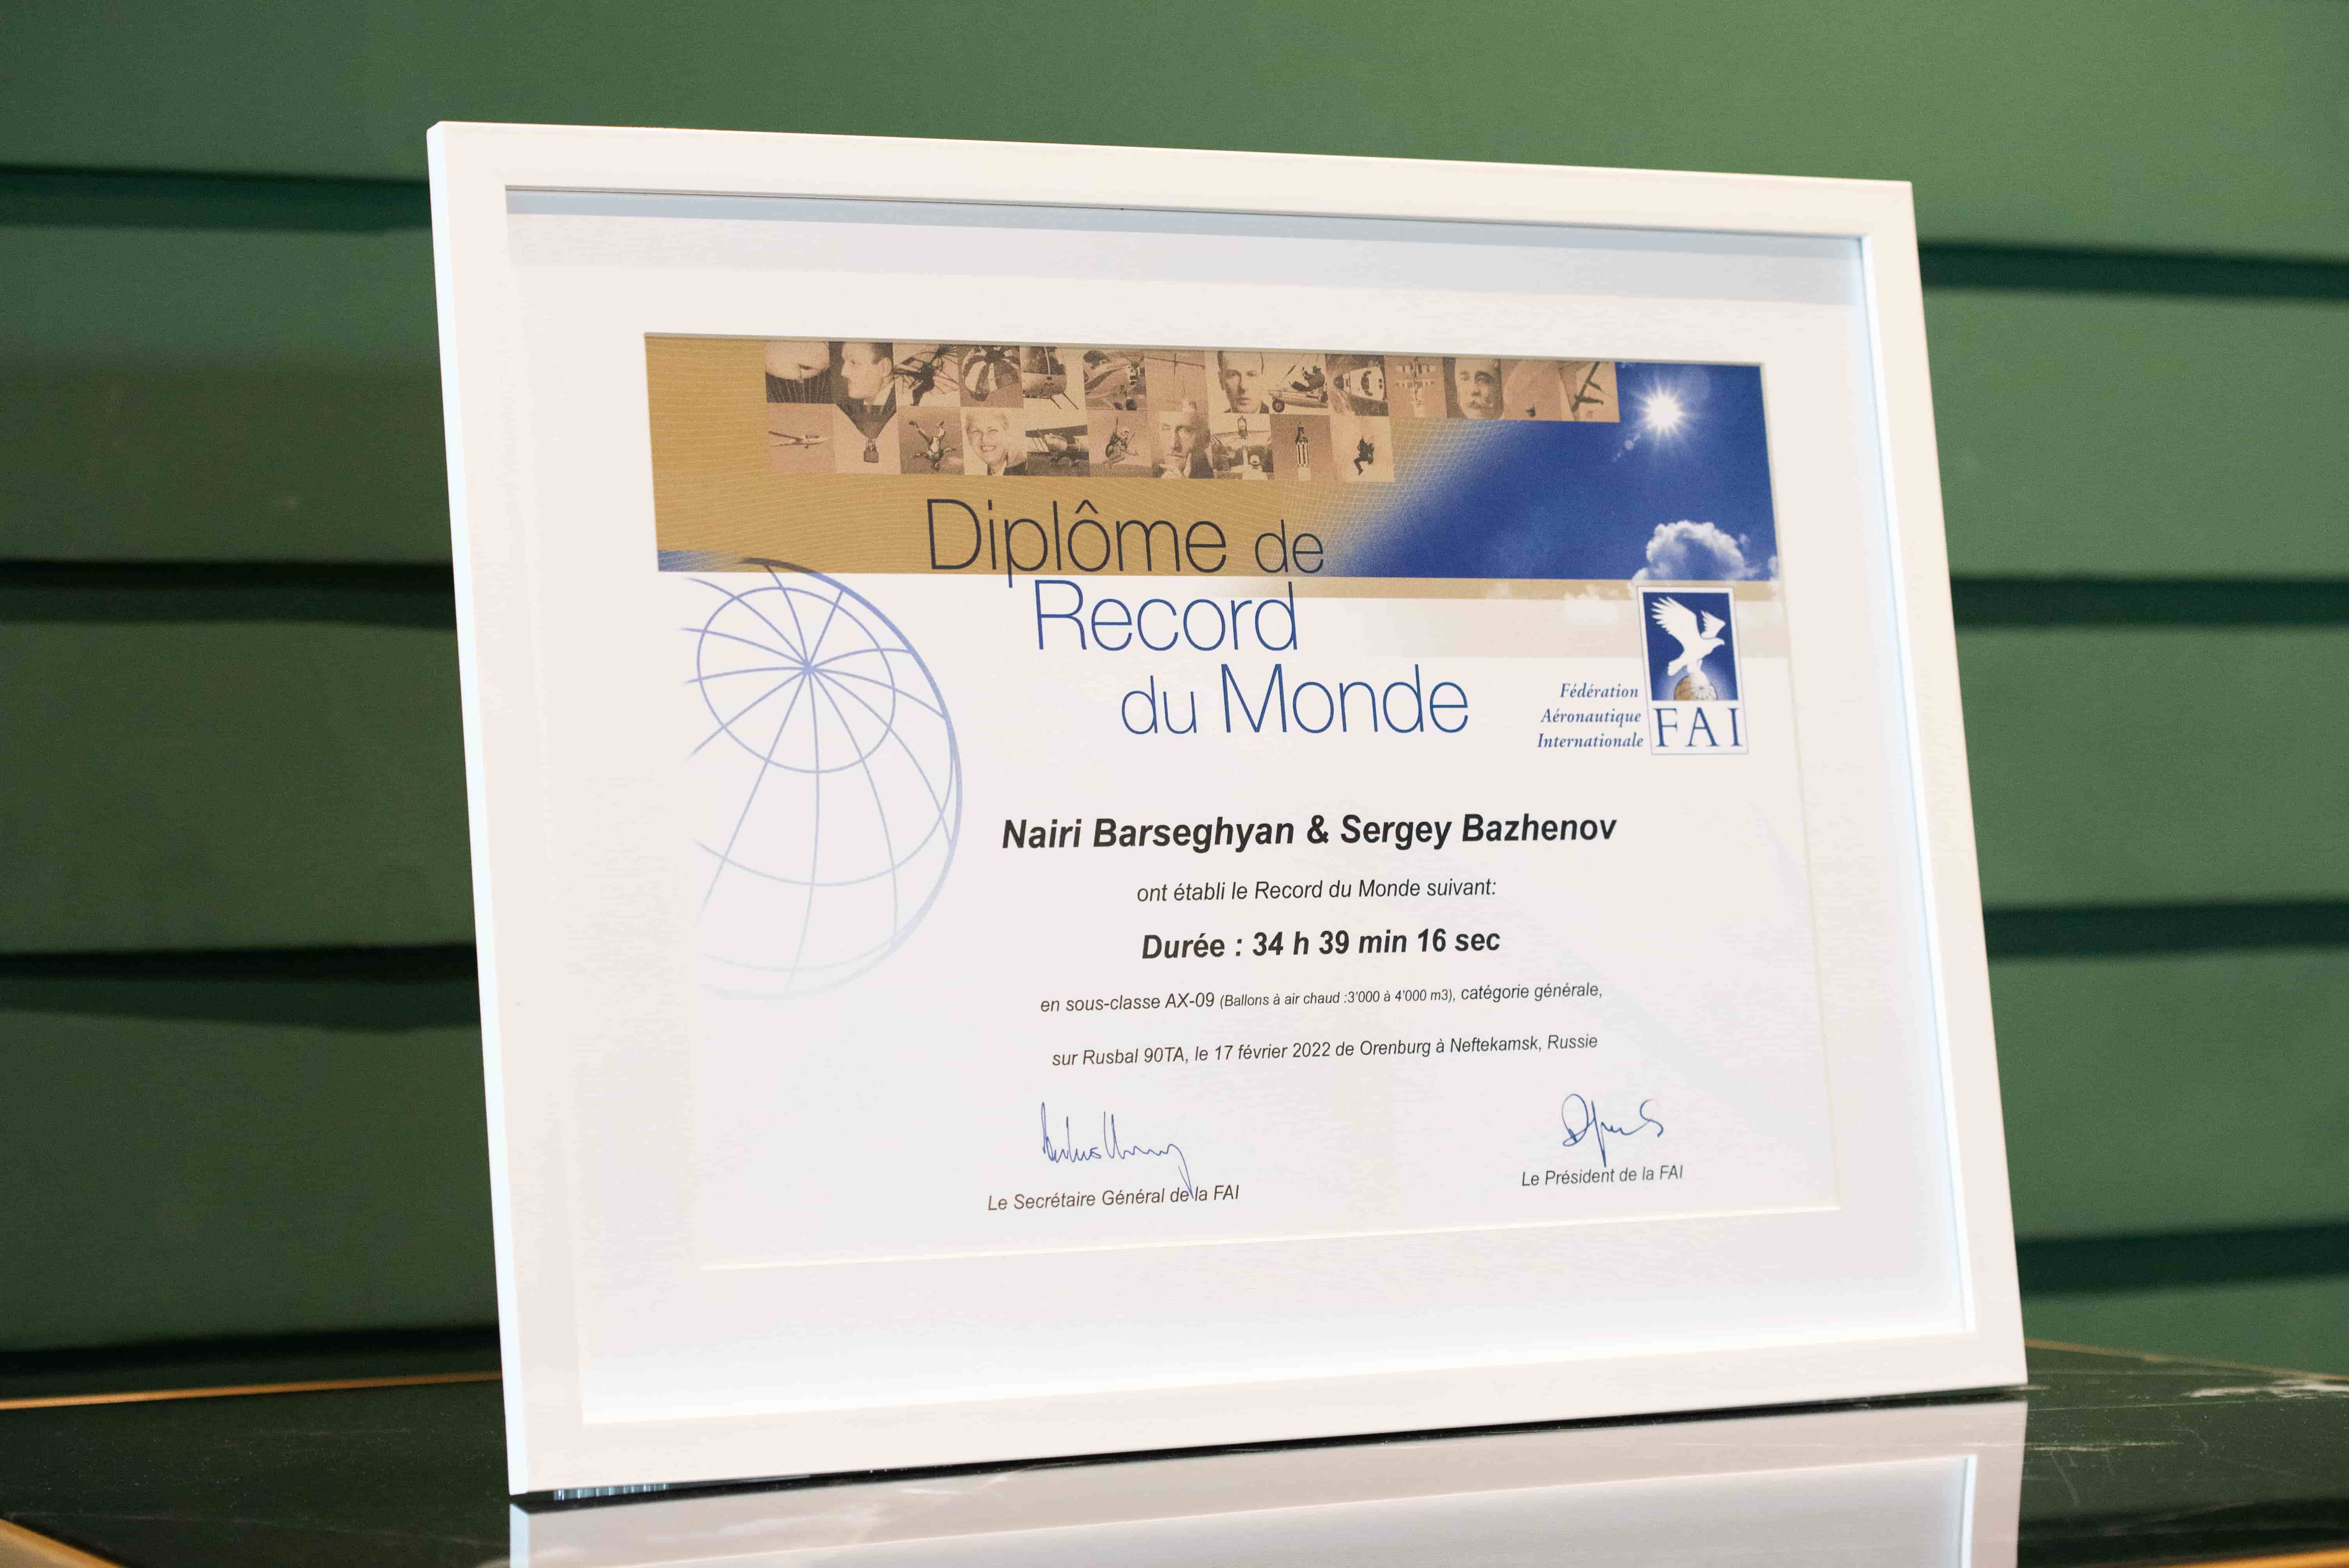 На торжественной церемонии основателю авиакомпании Наири Барсегяну было вручено сертификат о регистрации мирового рекорда